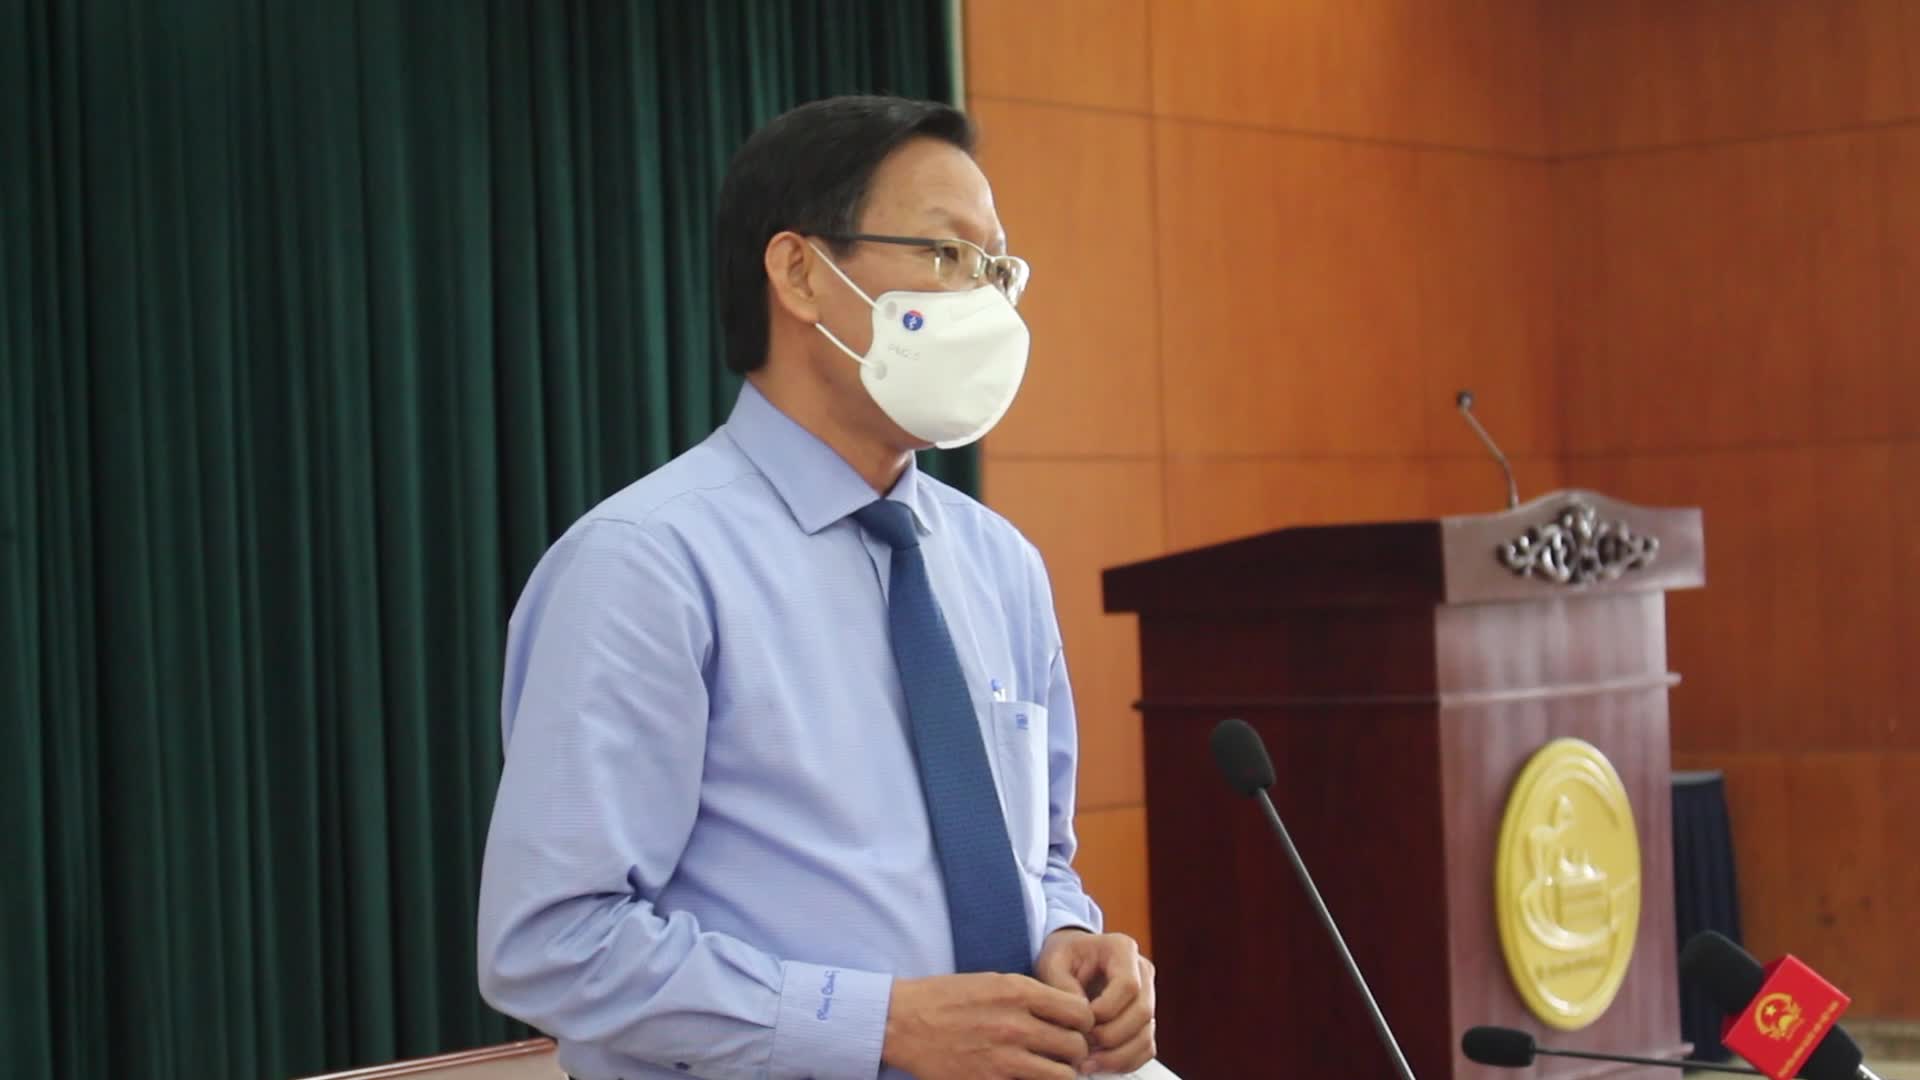 Sự kiện - Tân Chủ tịch UBND Tp. Hồ Chí Minh: “Quyết tâm kiểm soát dịch bệnh'